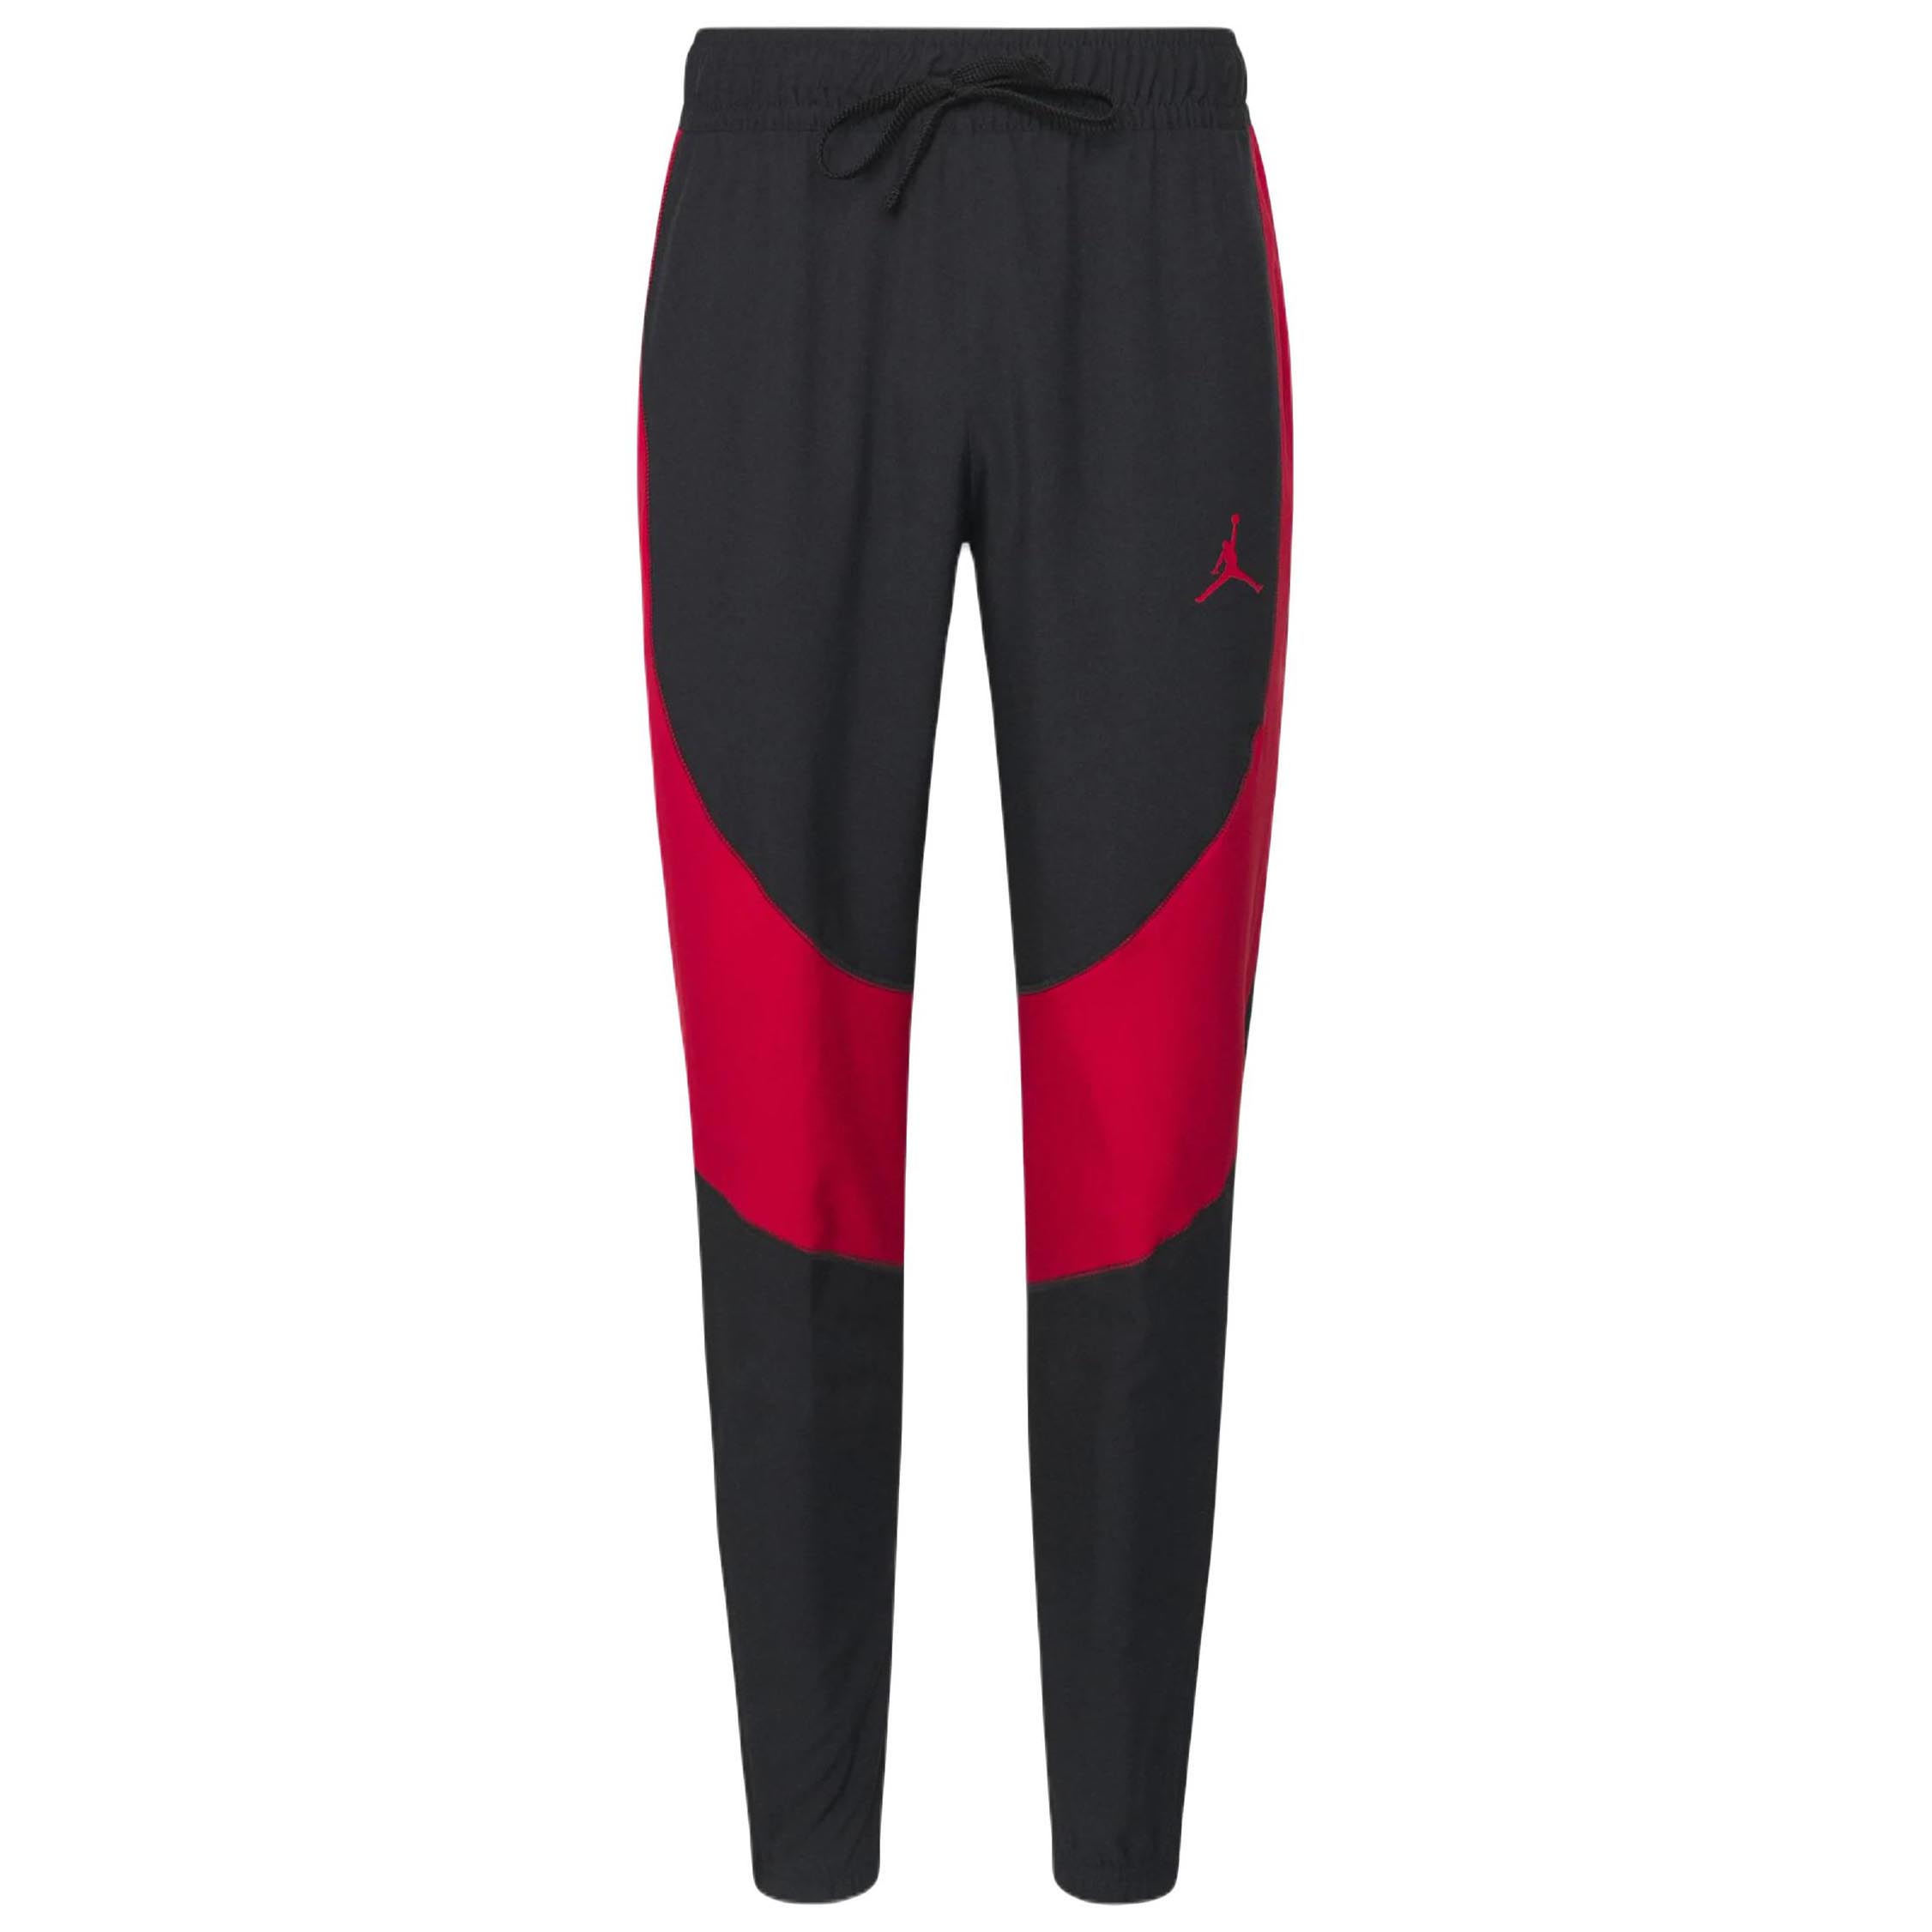 Спортивные брюки Nike Air Jordan Woven, черный/красный спортивные брюки nike air jordan flight pant черный